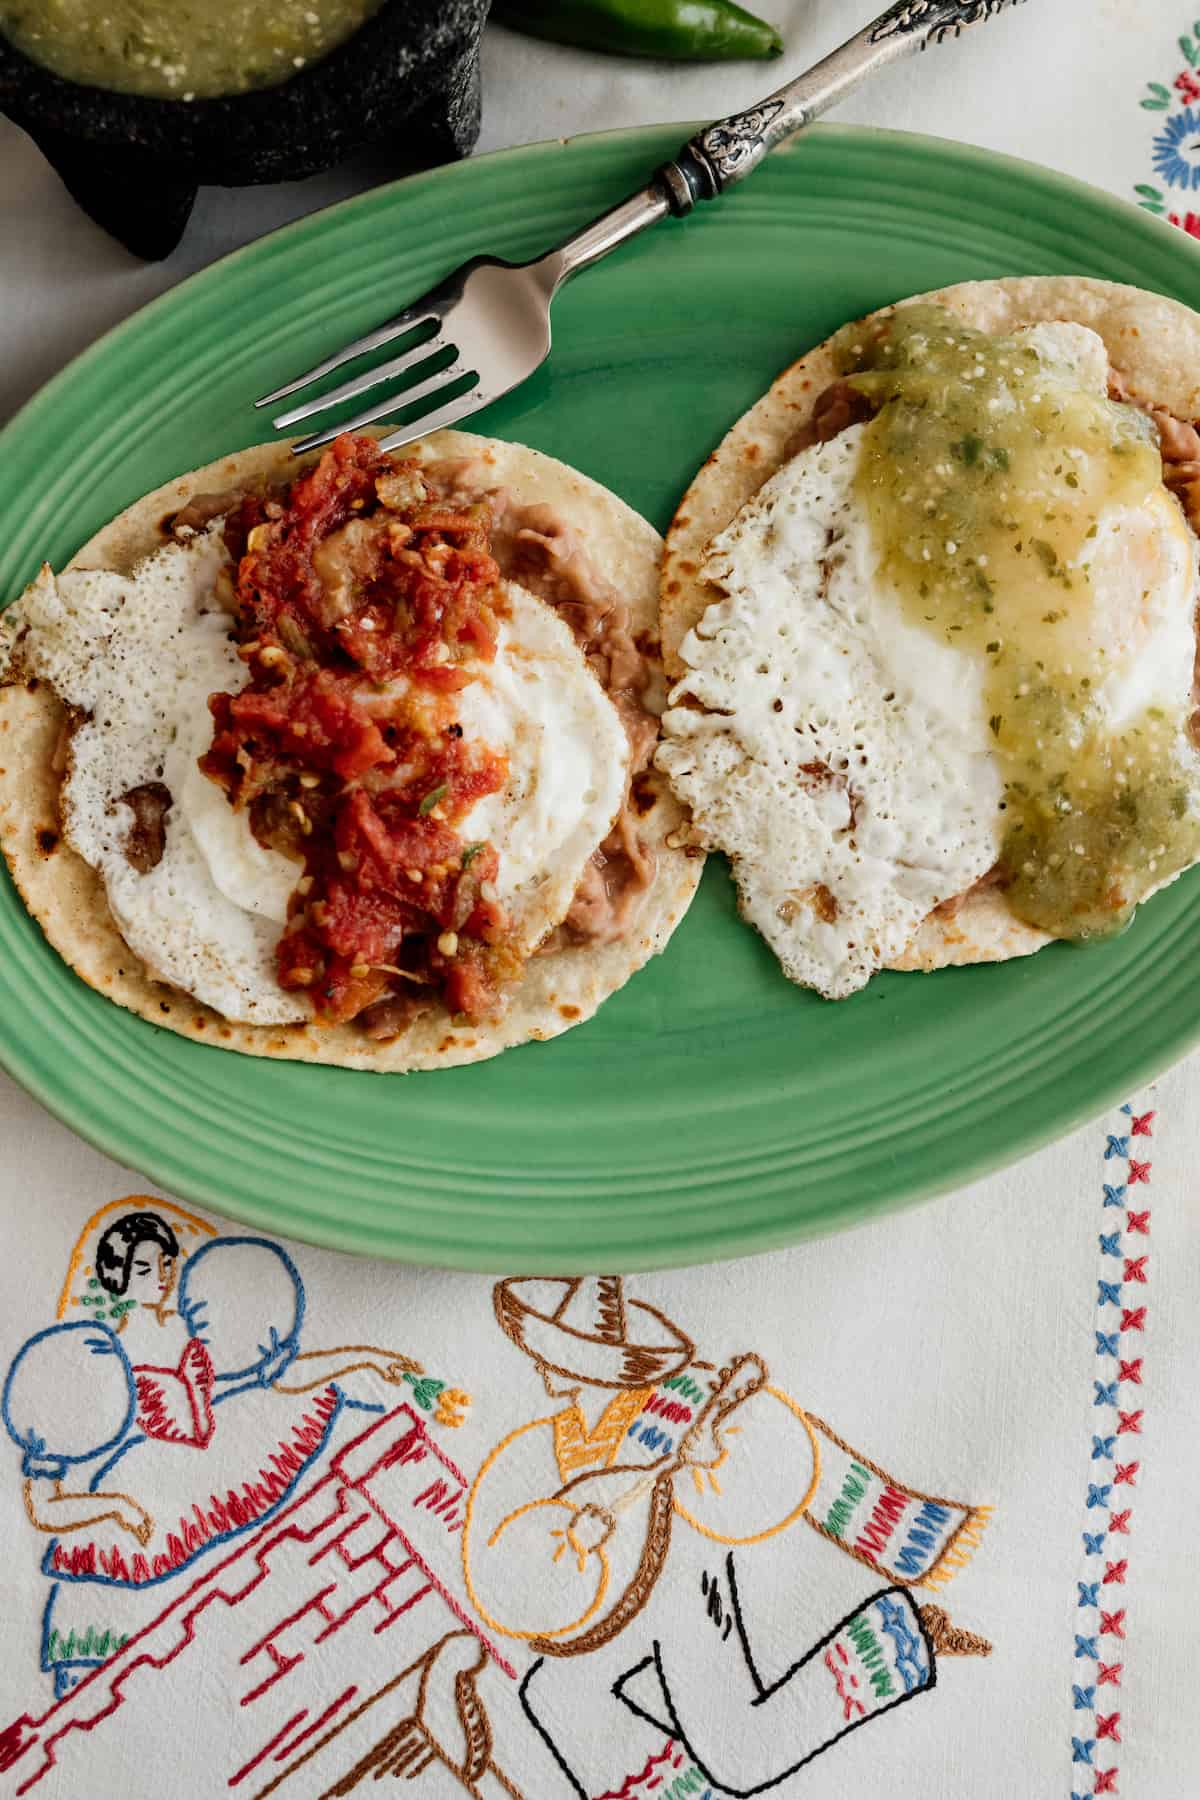 prato verde com Huevos Divorciados -- tortilhas de milho cobertas com feijão frito, ovos e salsa vermelha e verde